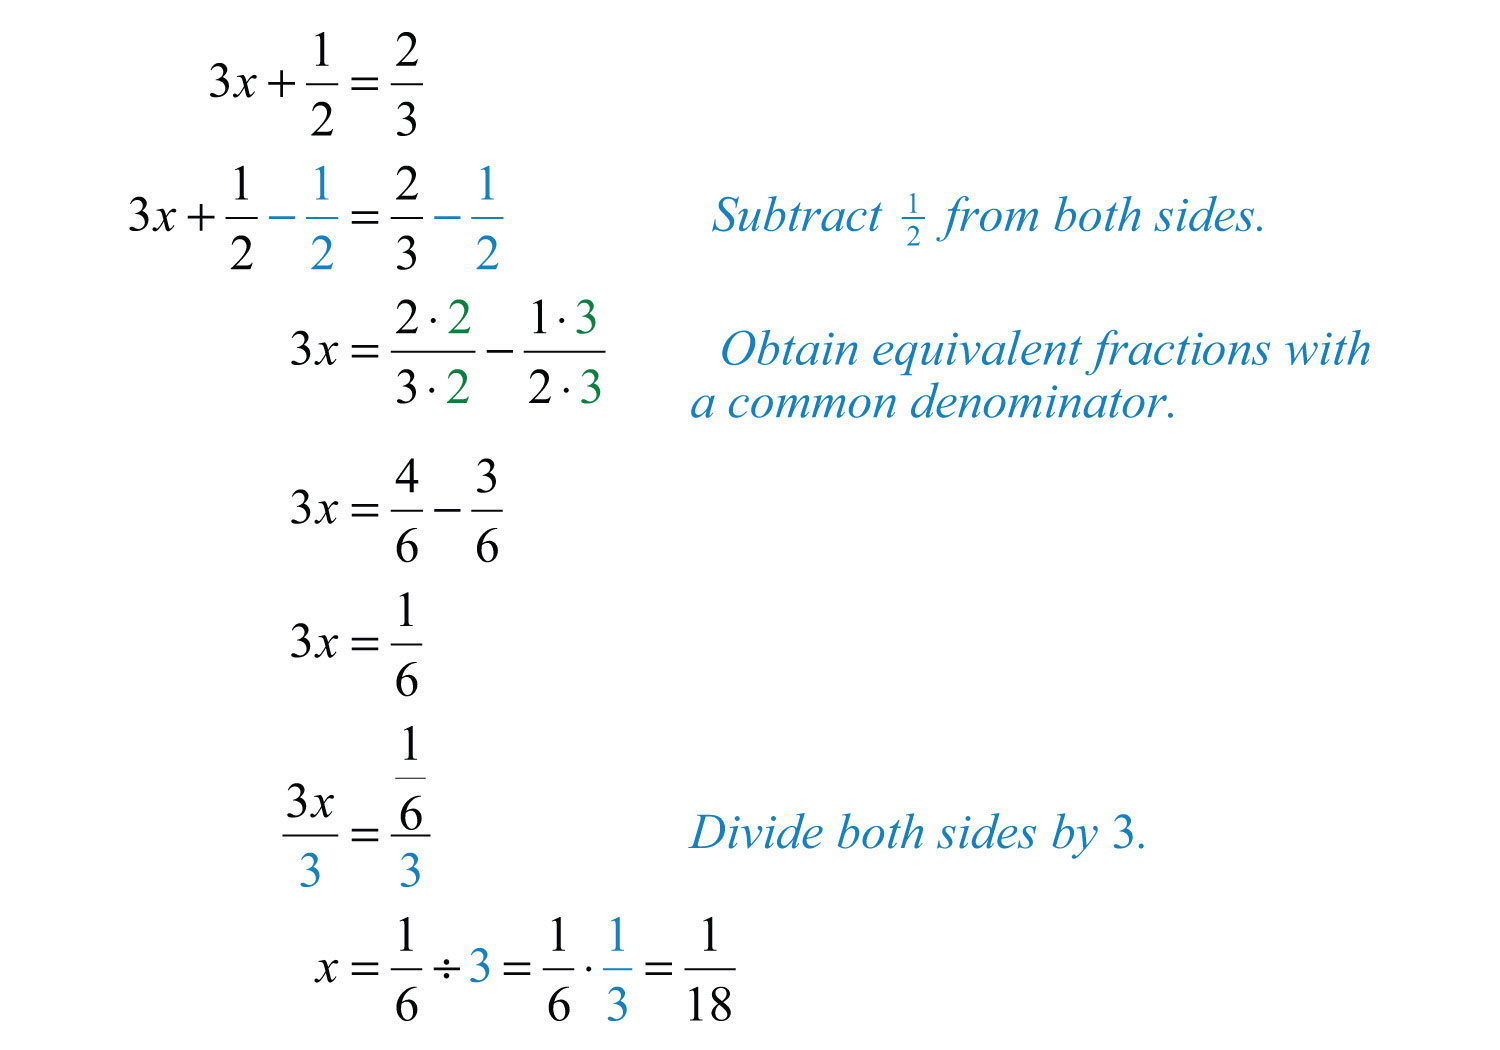 Solving Linear Equations Part I